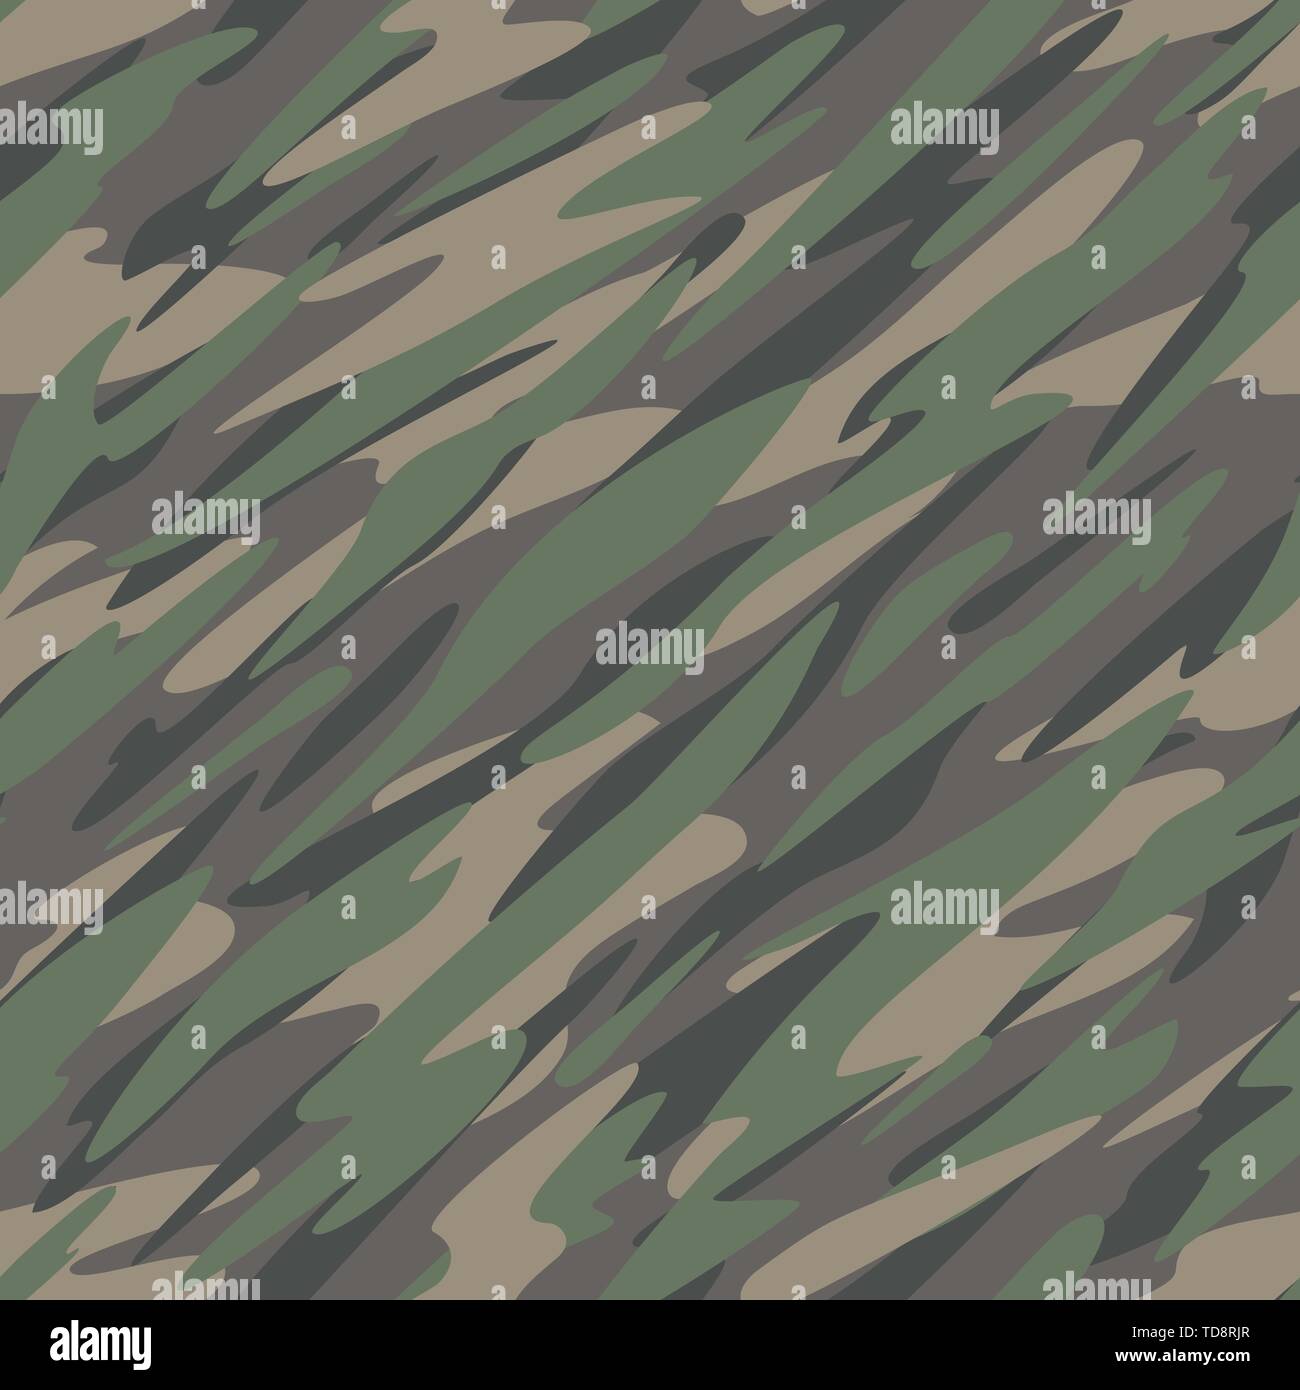 Wald/Dschungel Camouflage abstrakte Nahtlose, Sich wiederholendes Muster Vector Illustration Stock Vektor